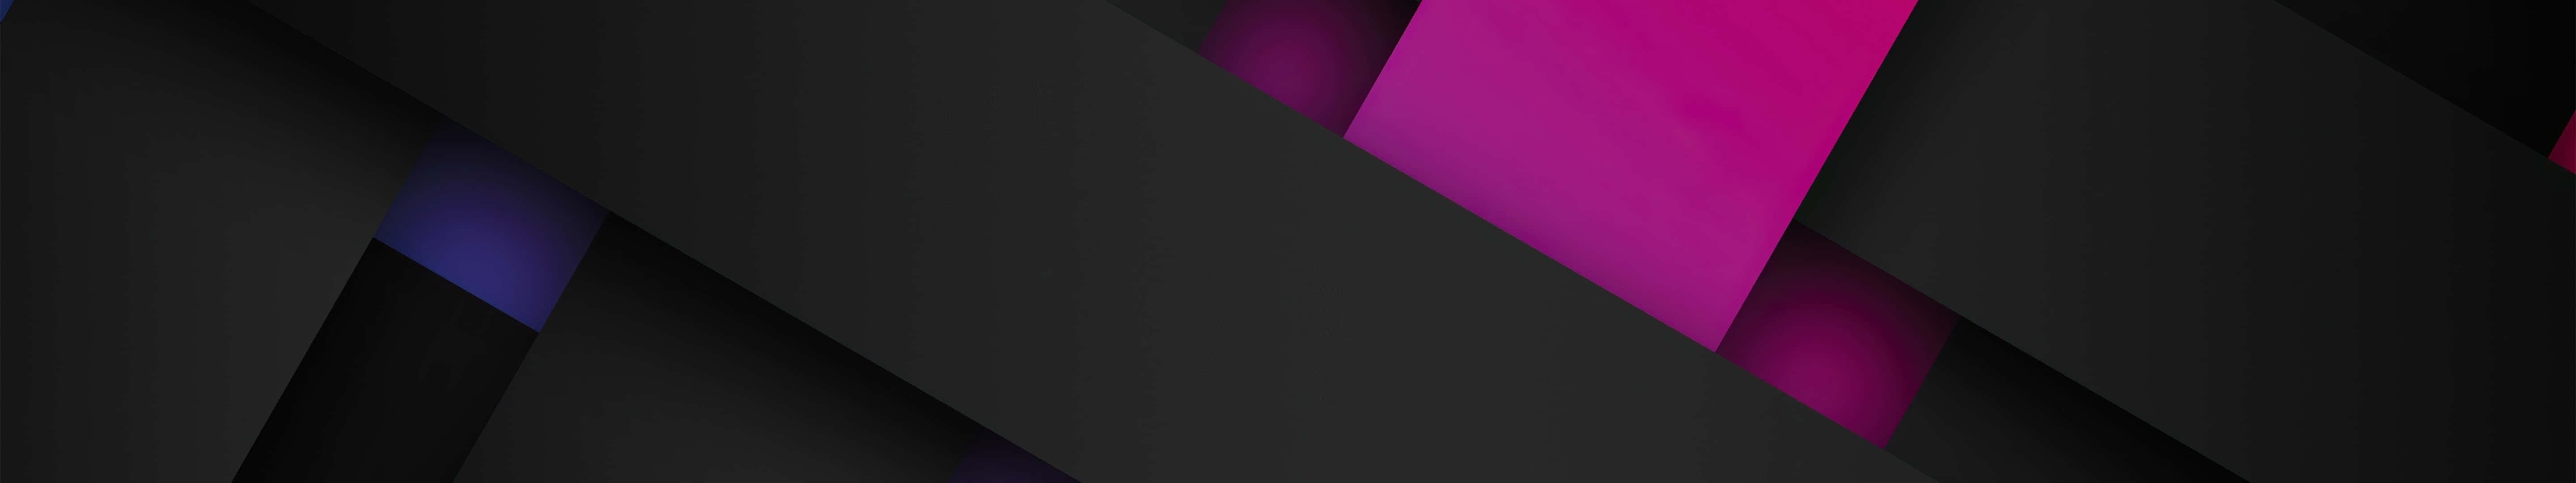 Unfondo De Pantalla Abstracto Negro Y Púrpura Con Un Fondo Negro